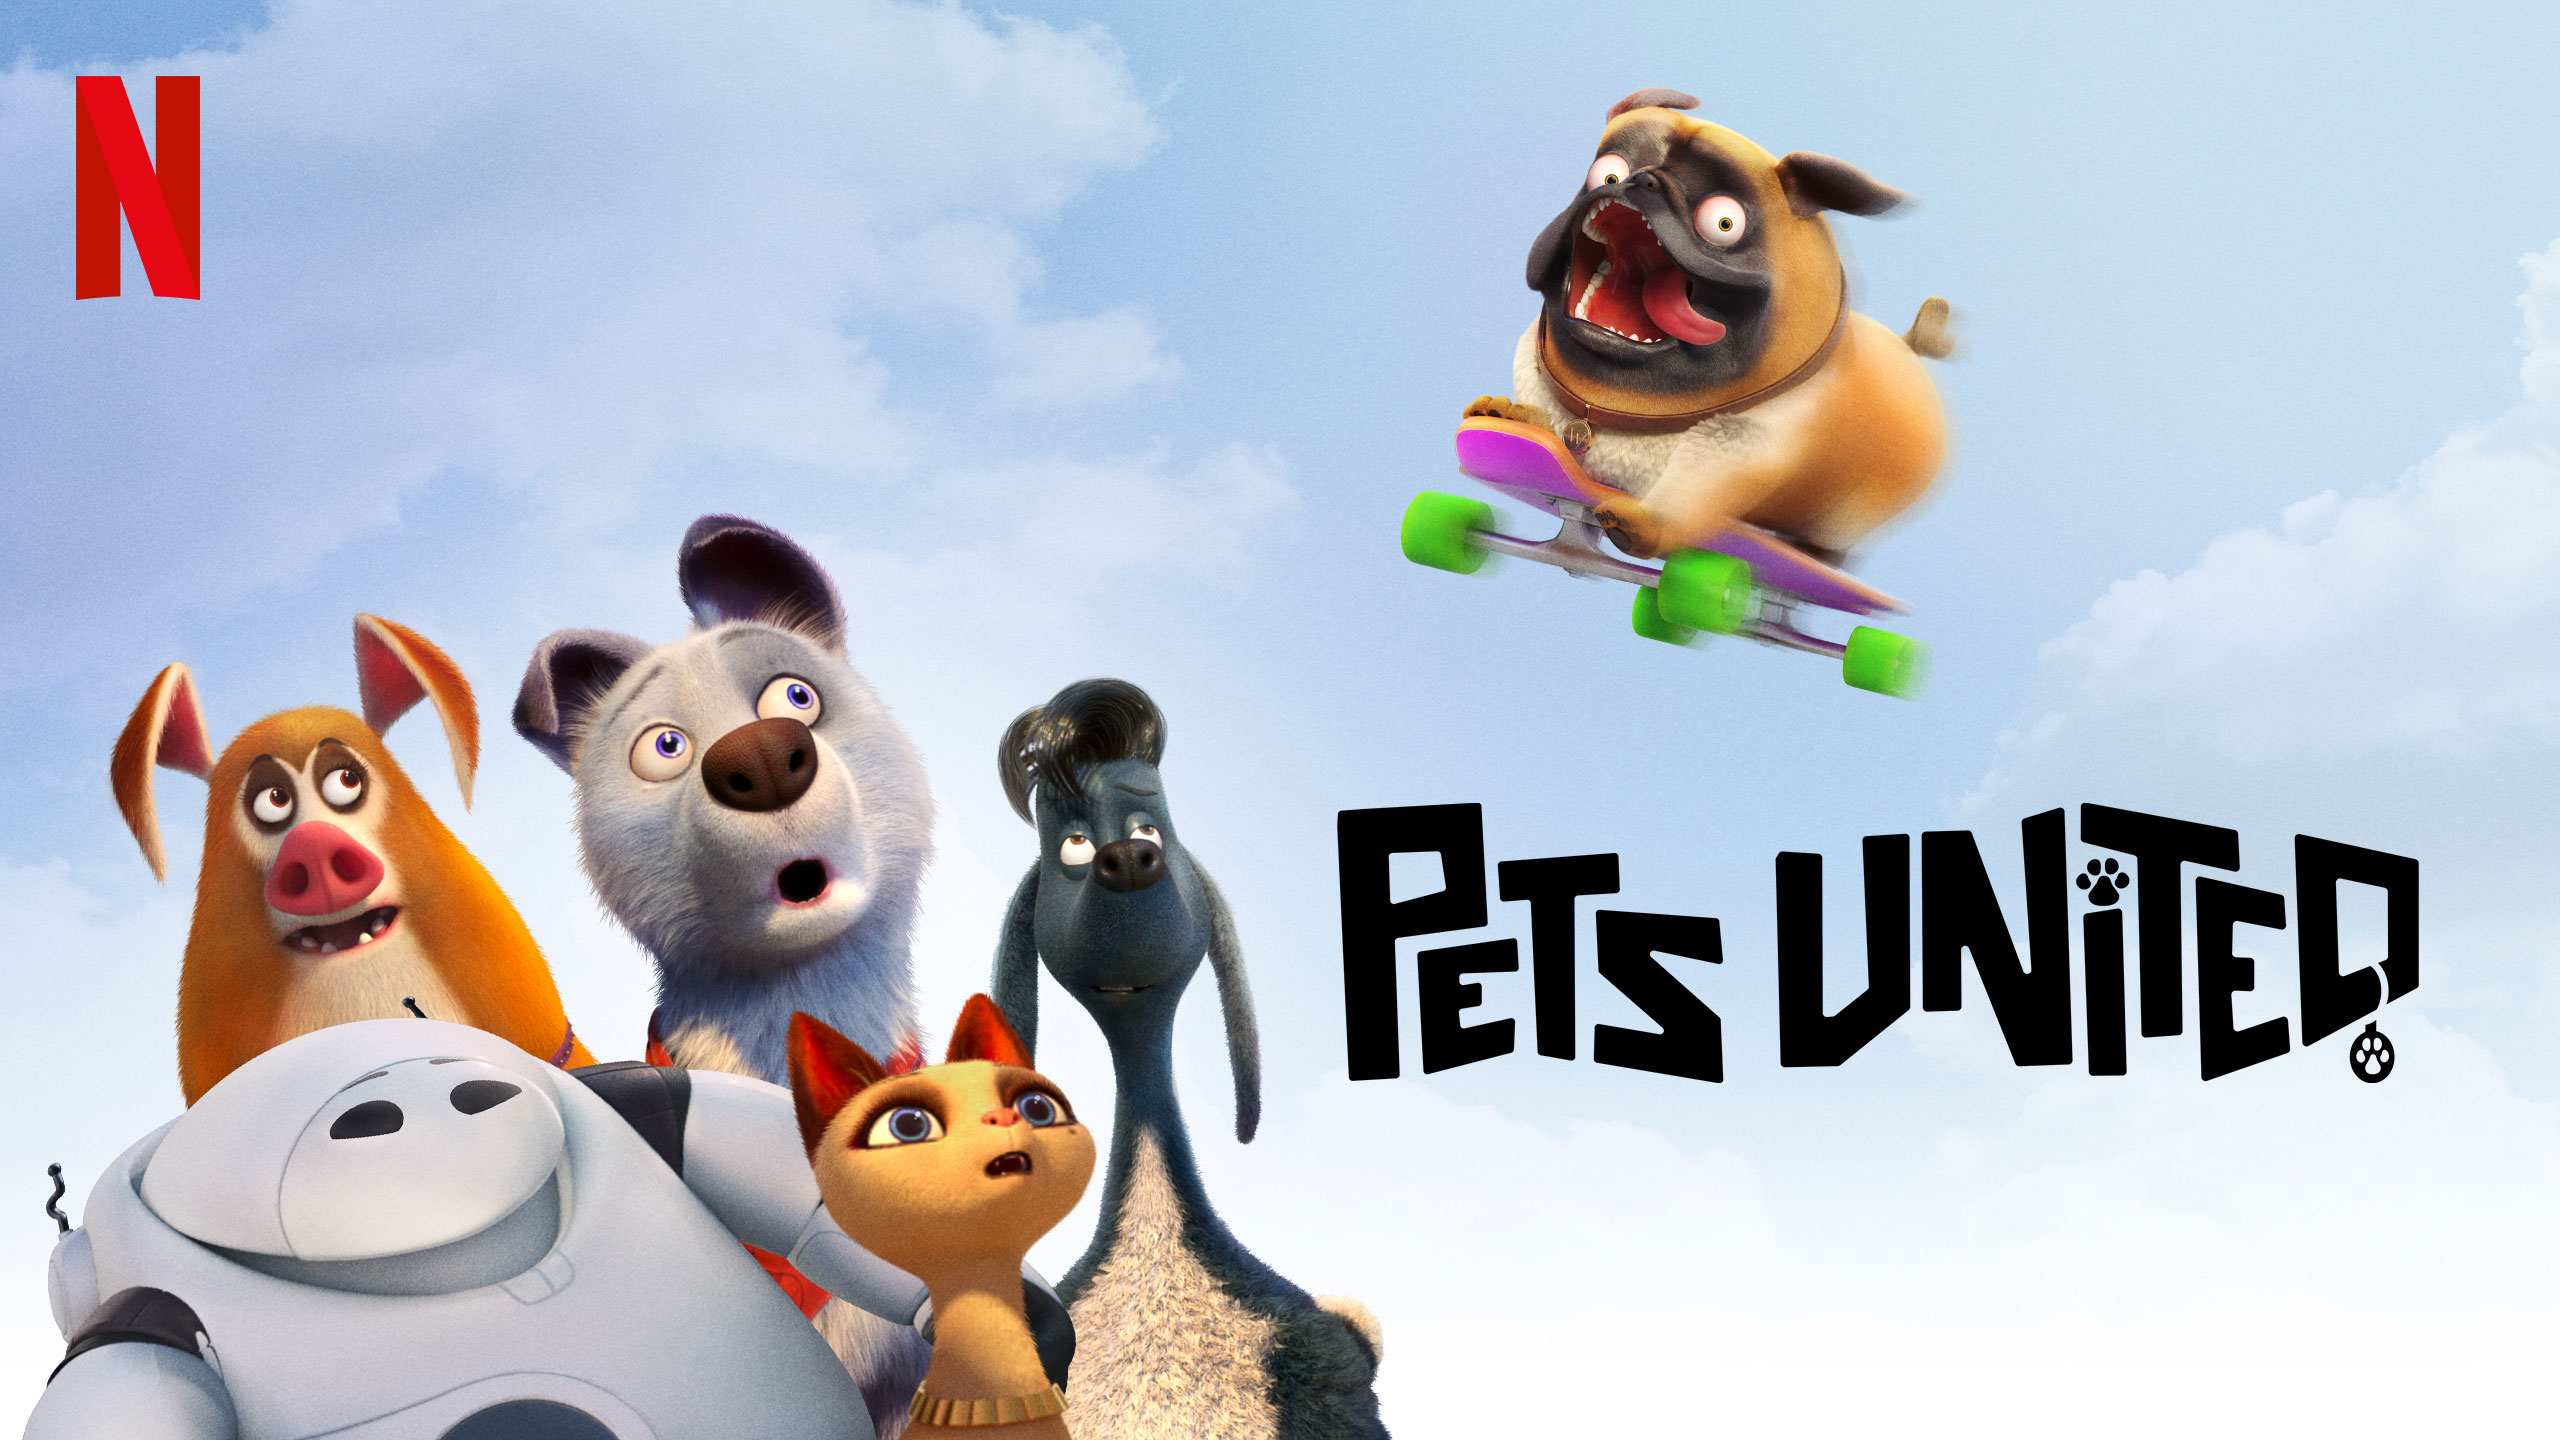 Pets United | Netflix DA Concept, Finishing & Illustration